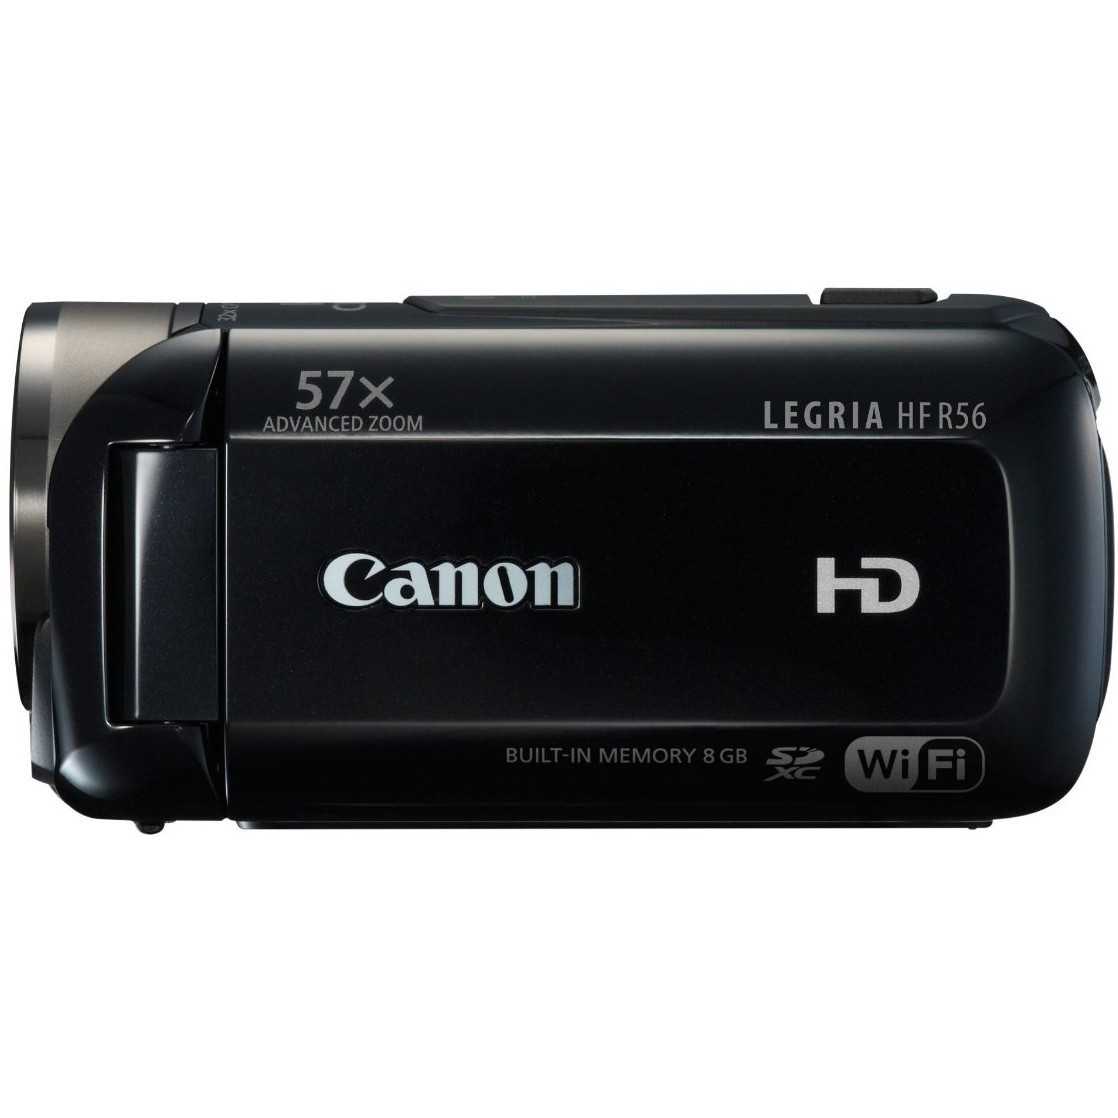 Canon legria hf s21 купить по акционной цене , отзывы и обзоры.